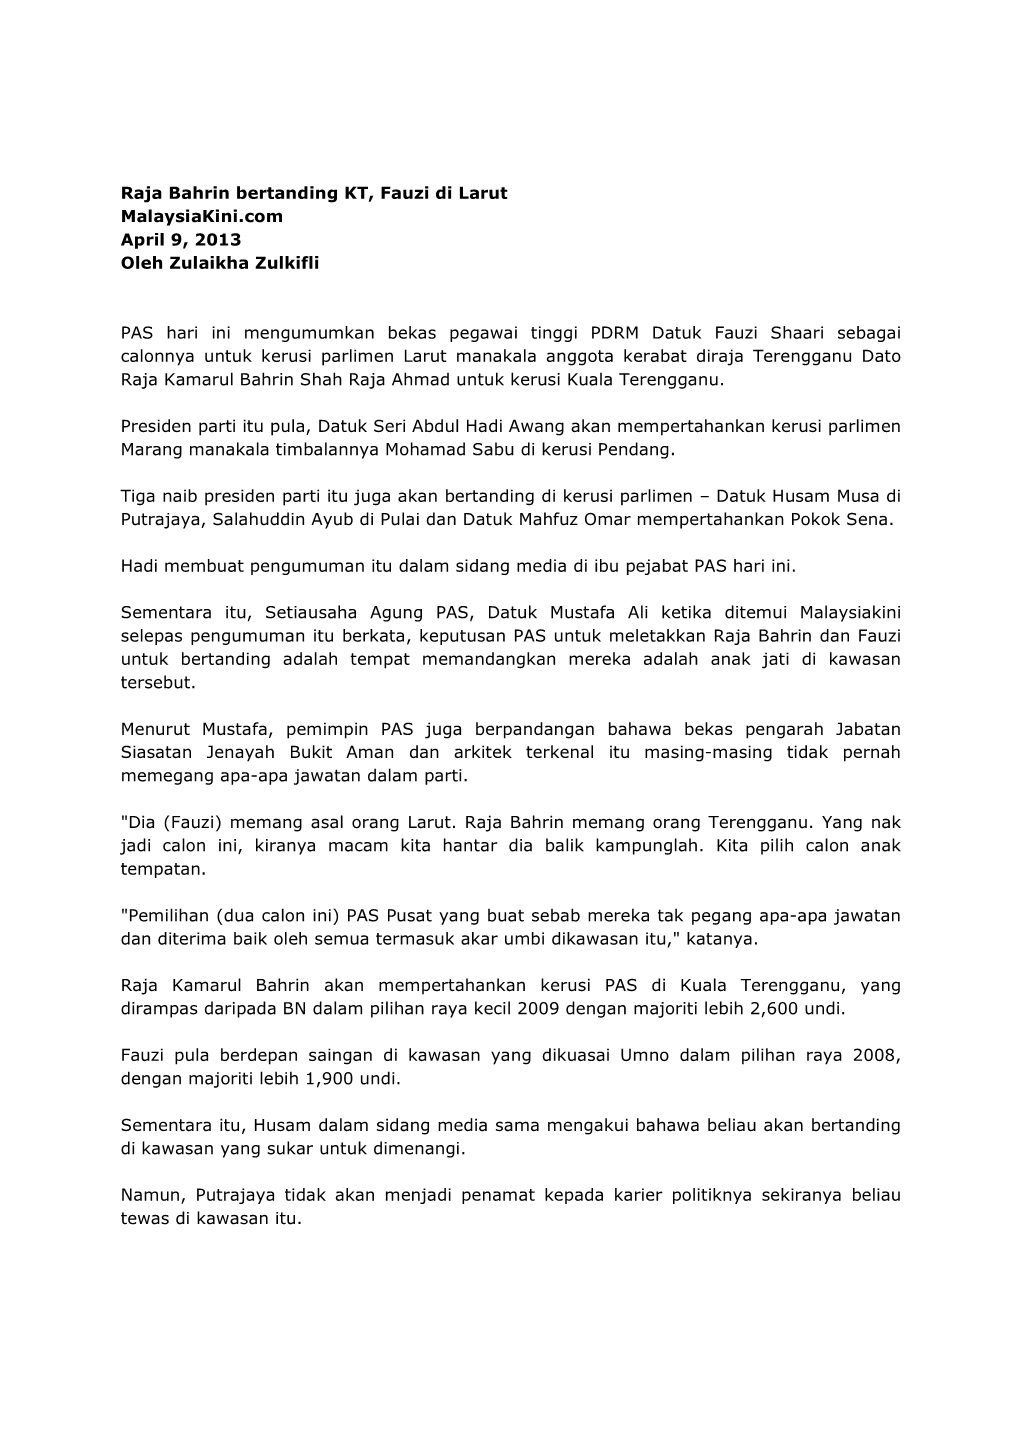 Raja Bahrin Bertanding KT, Fauzi Di Larut Malaysiakini.Com April 9, 2013 Oleh Zulaikha Zulkifli